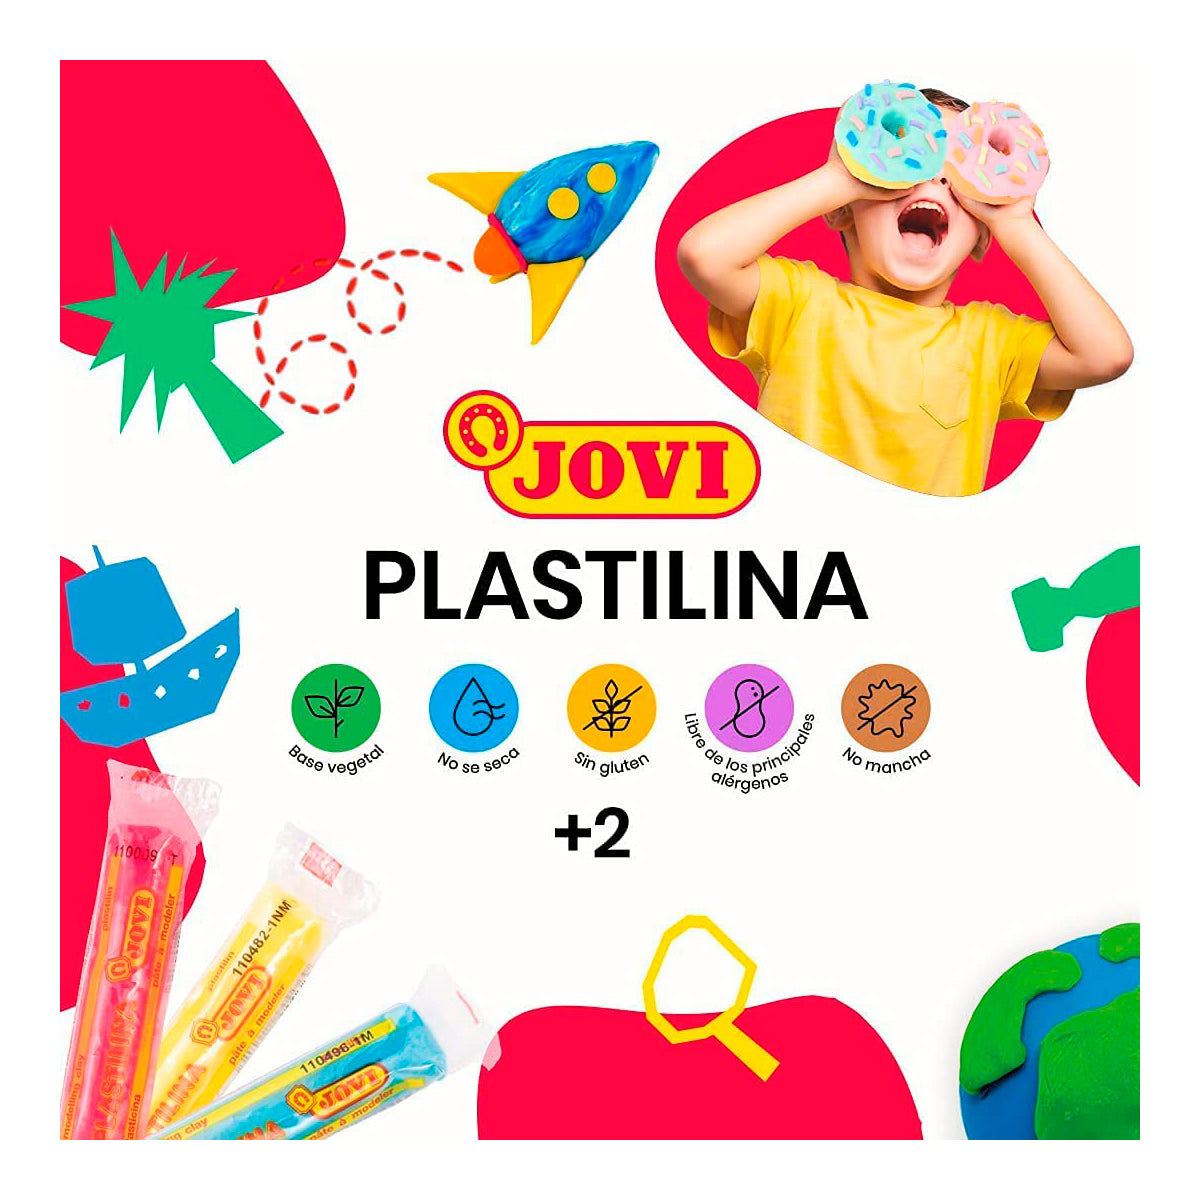 JOVI - Estuche con Plastilina en 15 Colores Surtidos, Base Vegetal